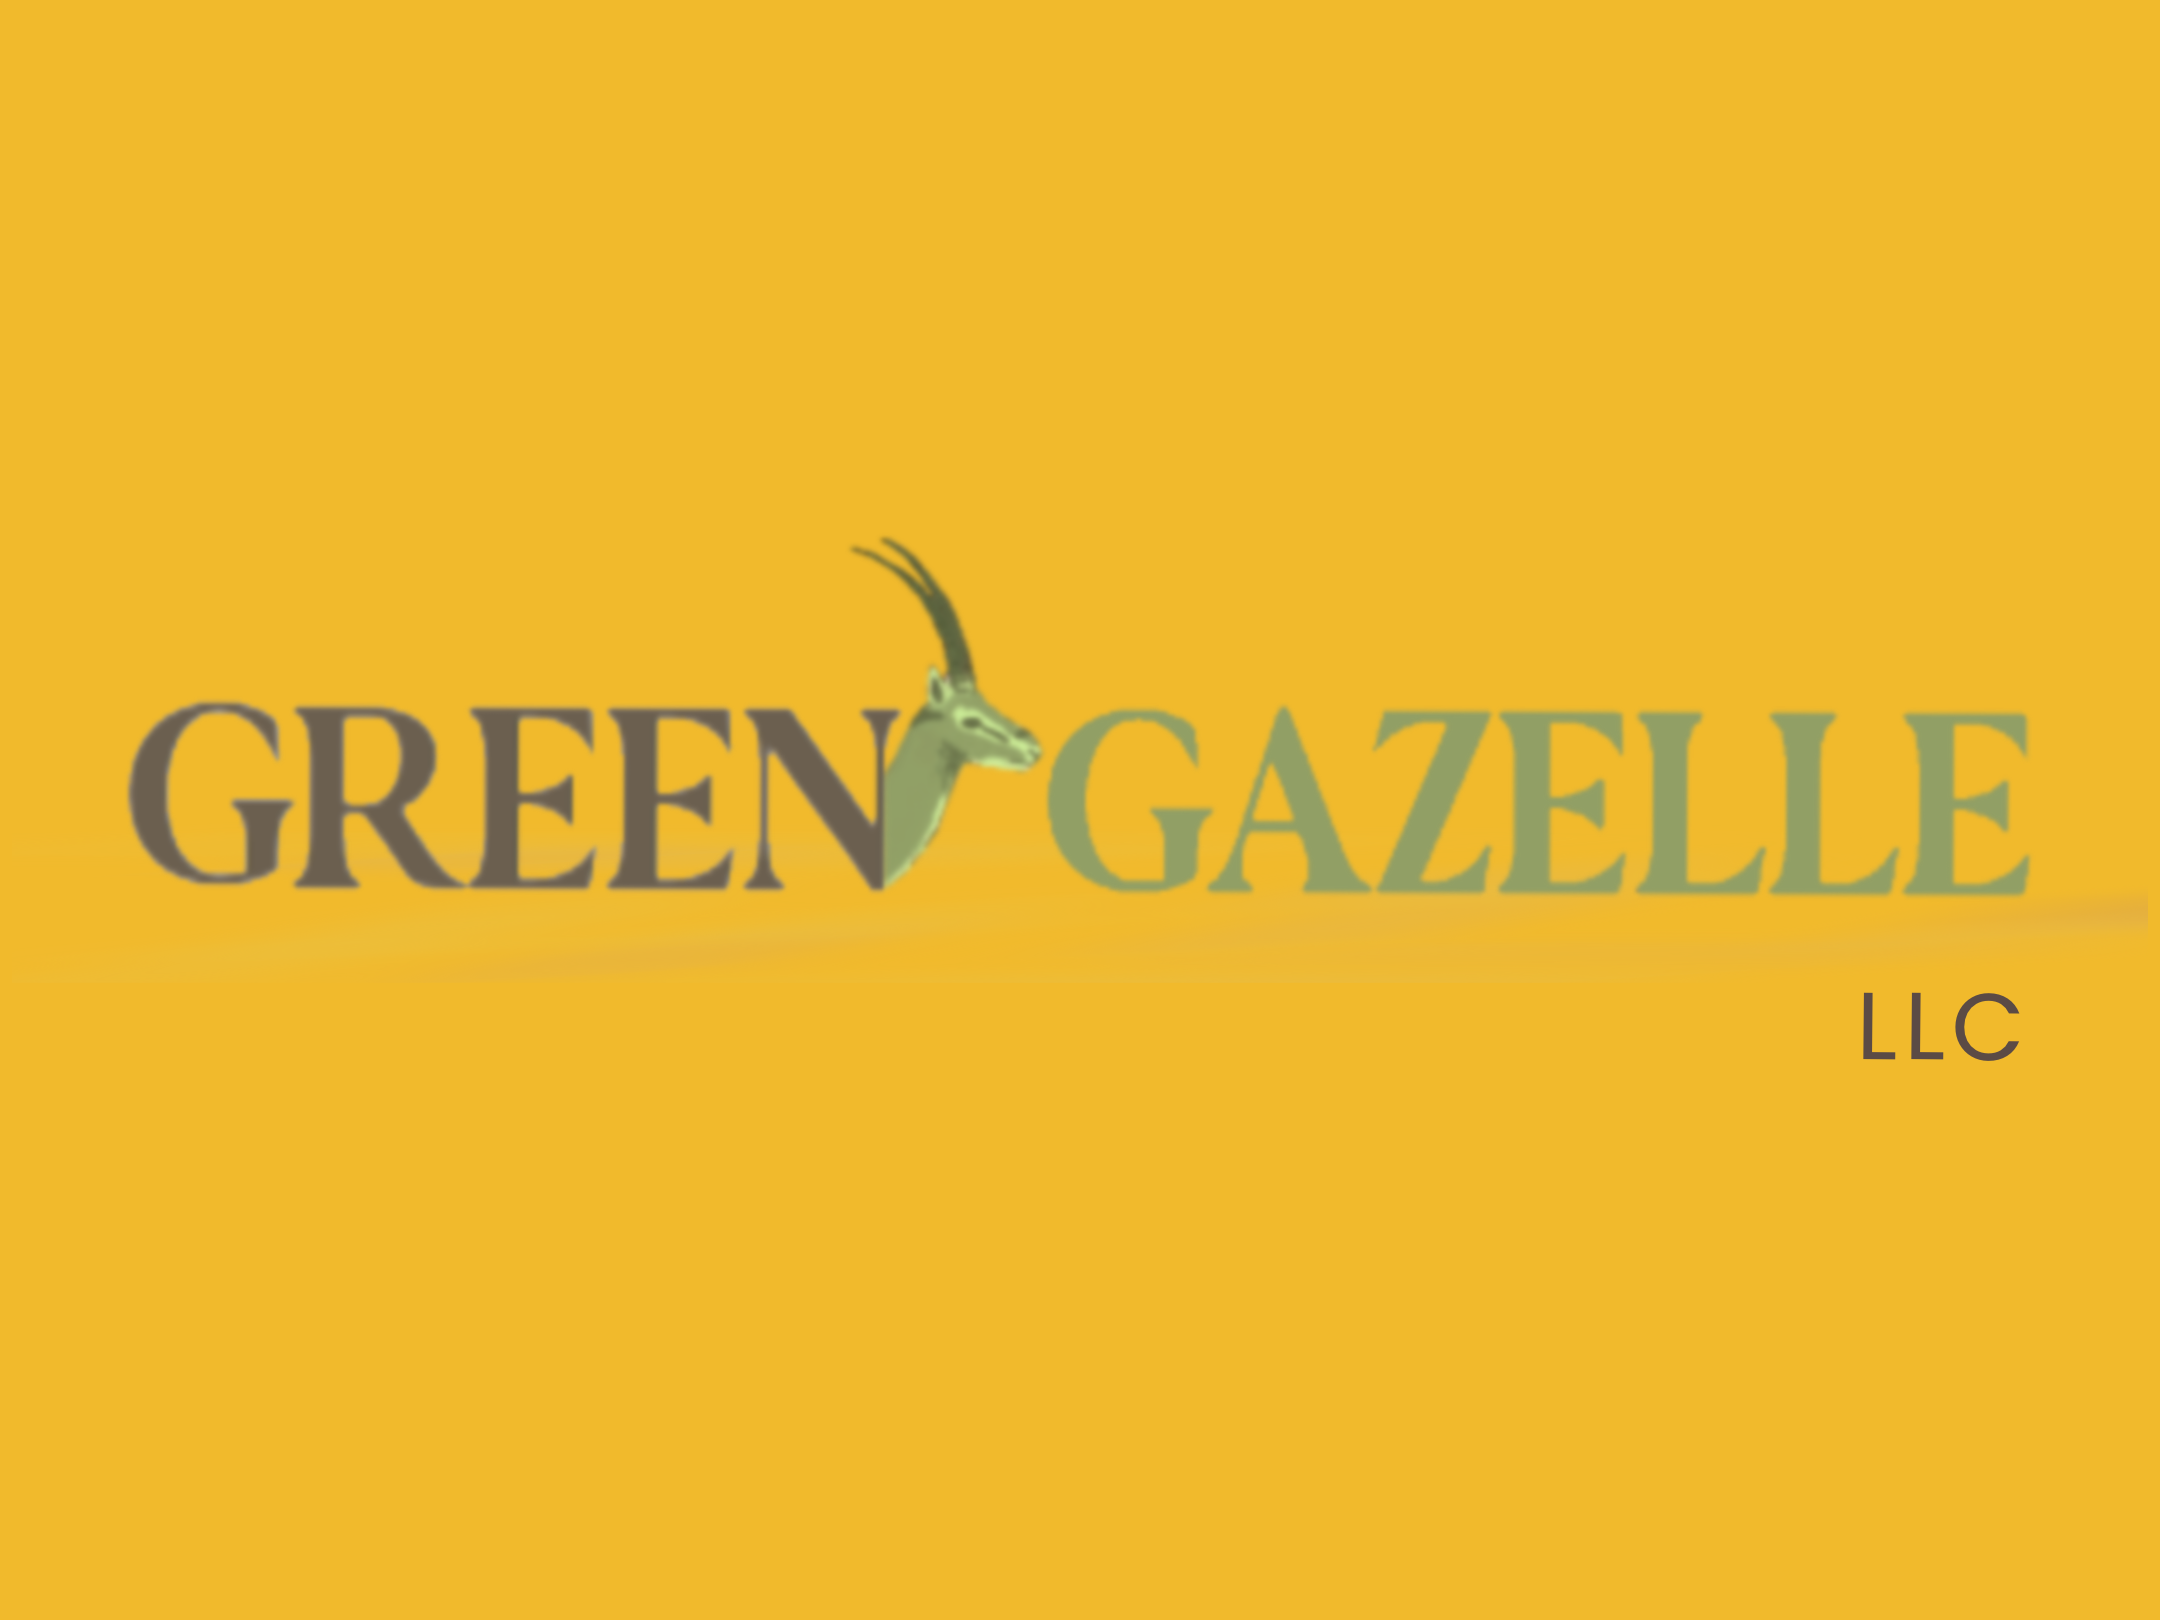 Green Gazelle LLC Logo